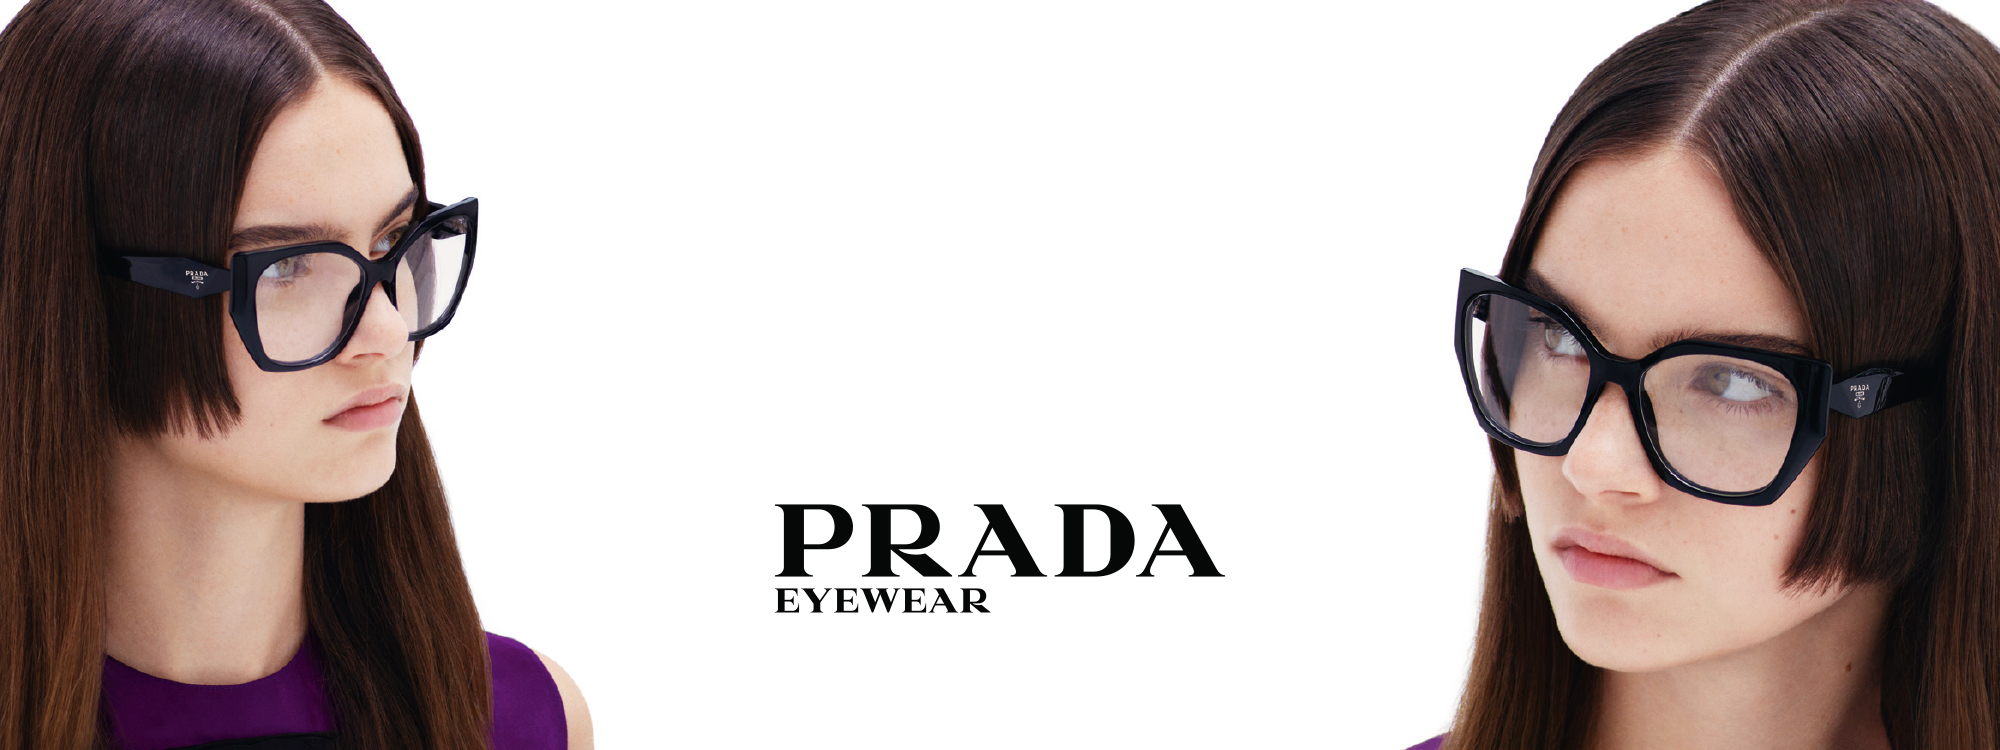 wetenschapper Trekken autobiografie Prada - The Optic Shop